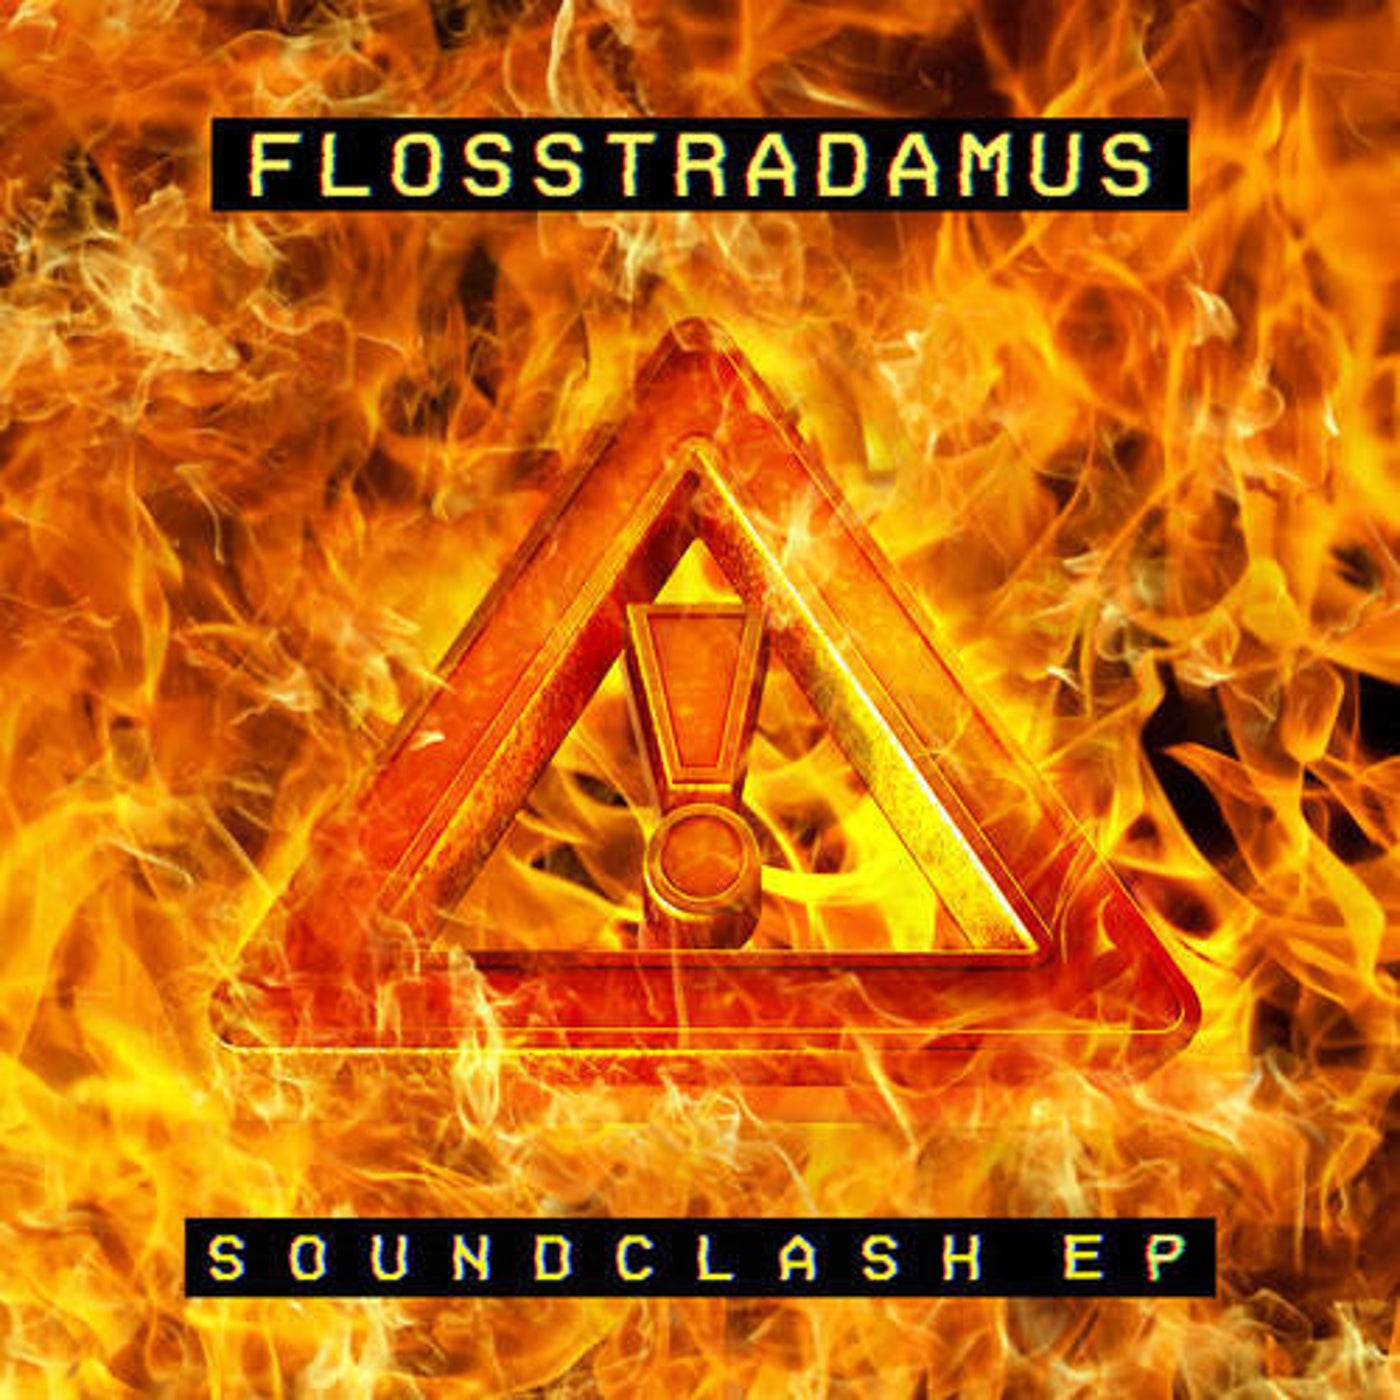 Soundclash EP